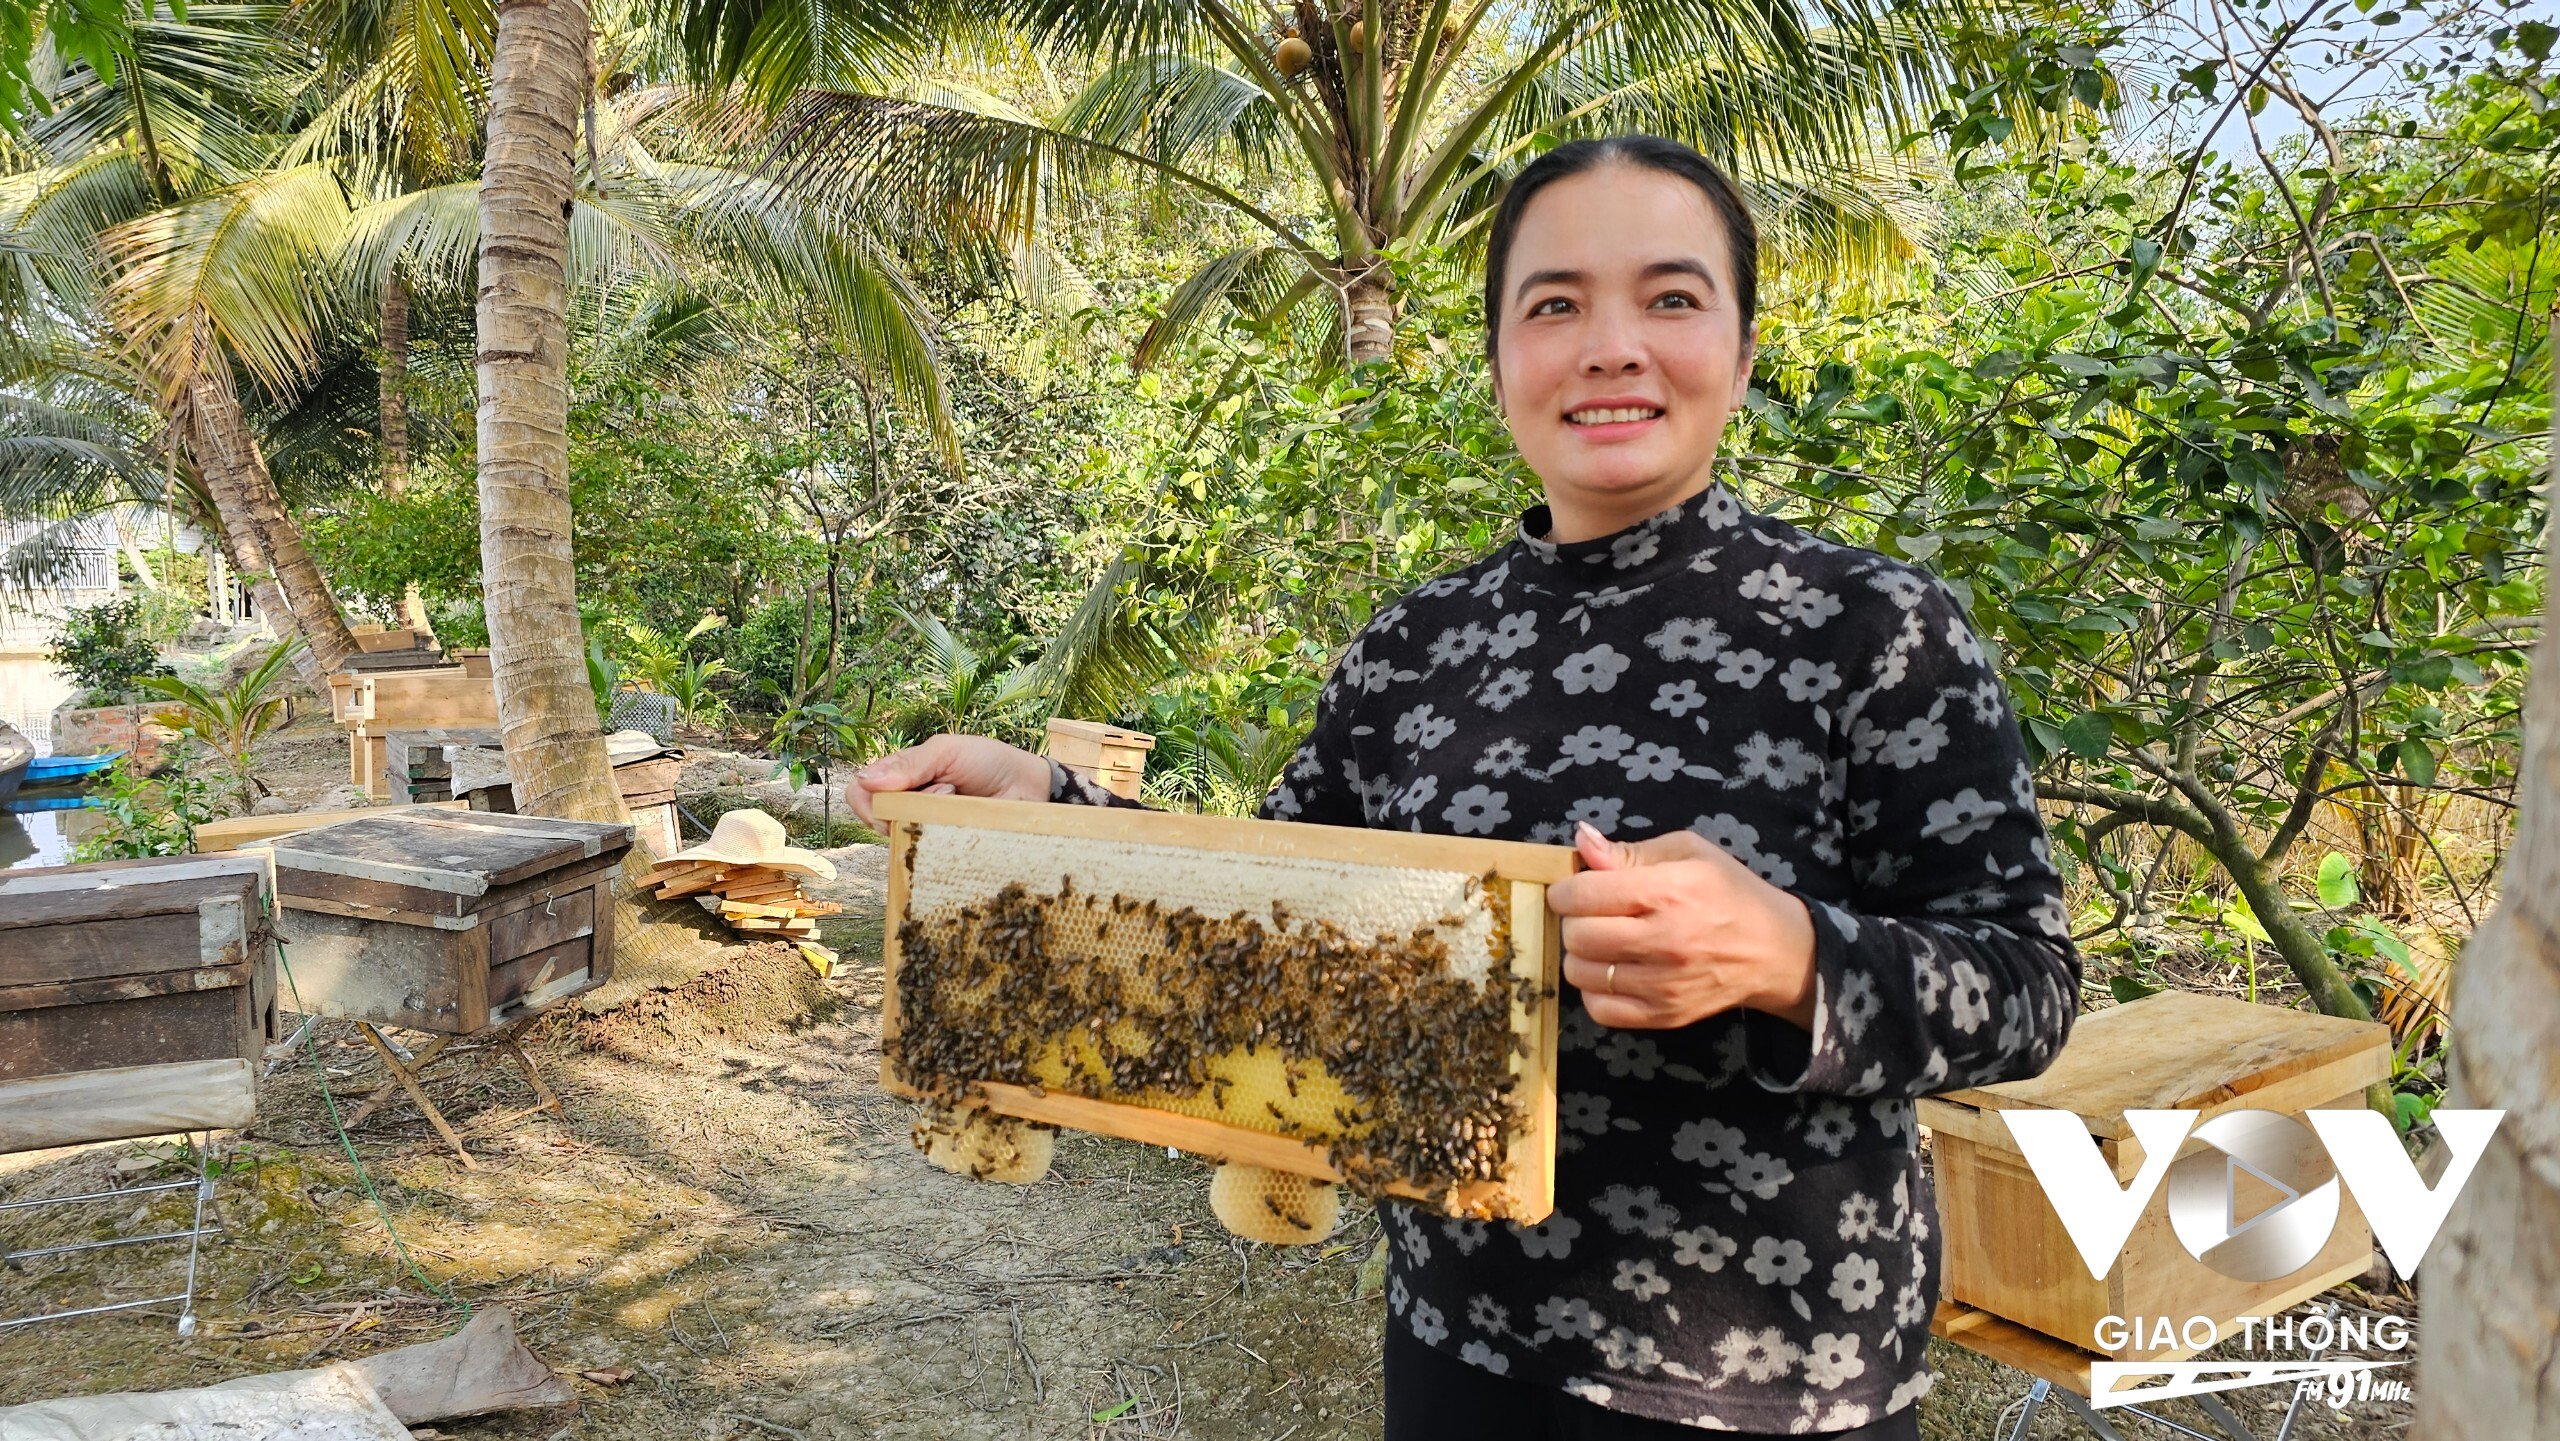 Chị Kim Toàn hiện nuôi khoảng 130 thùng ong lấy mật trong vườn nhà. Ảnh: Thanh Phê